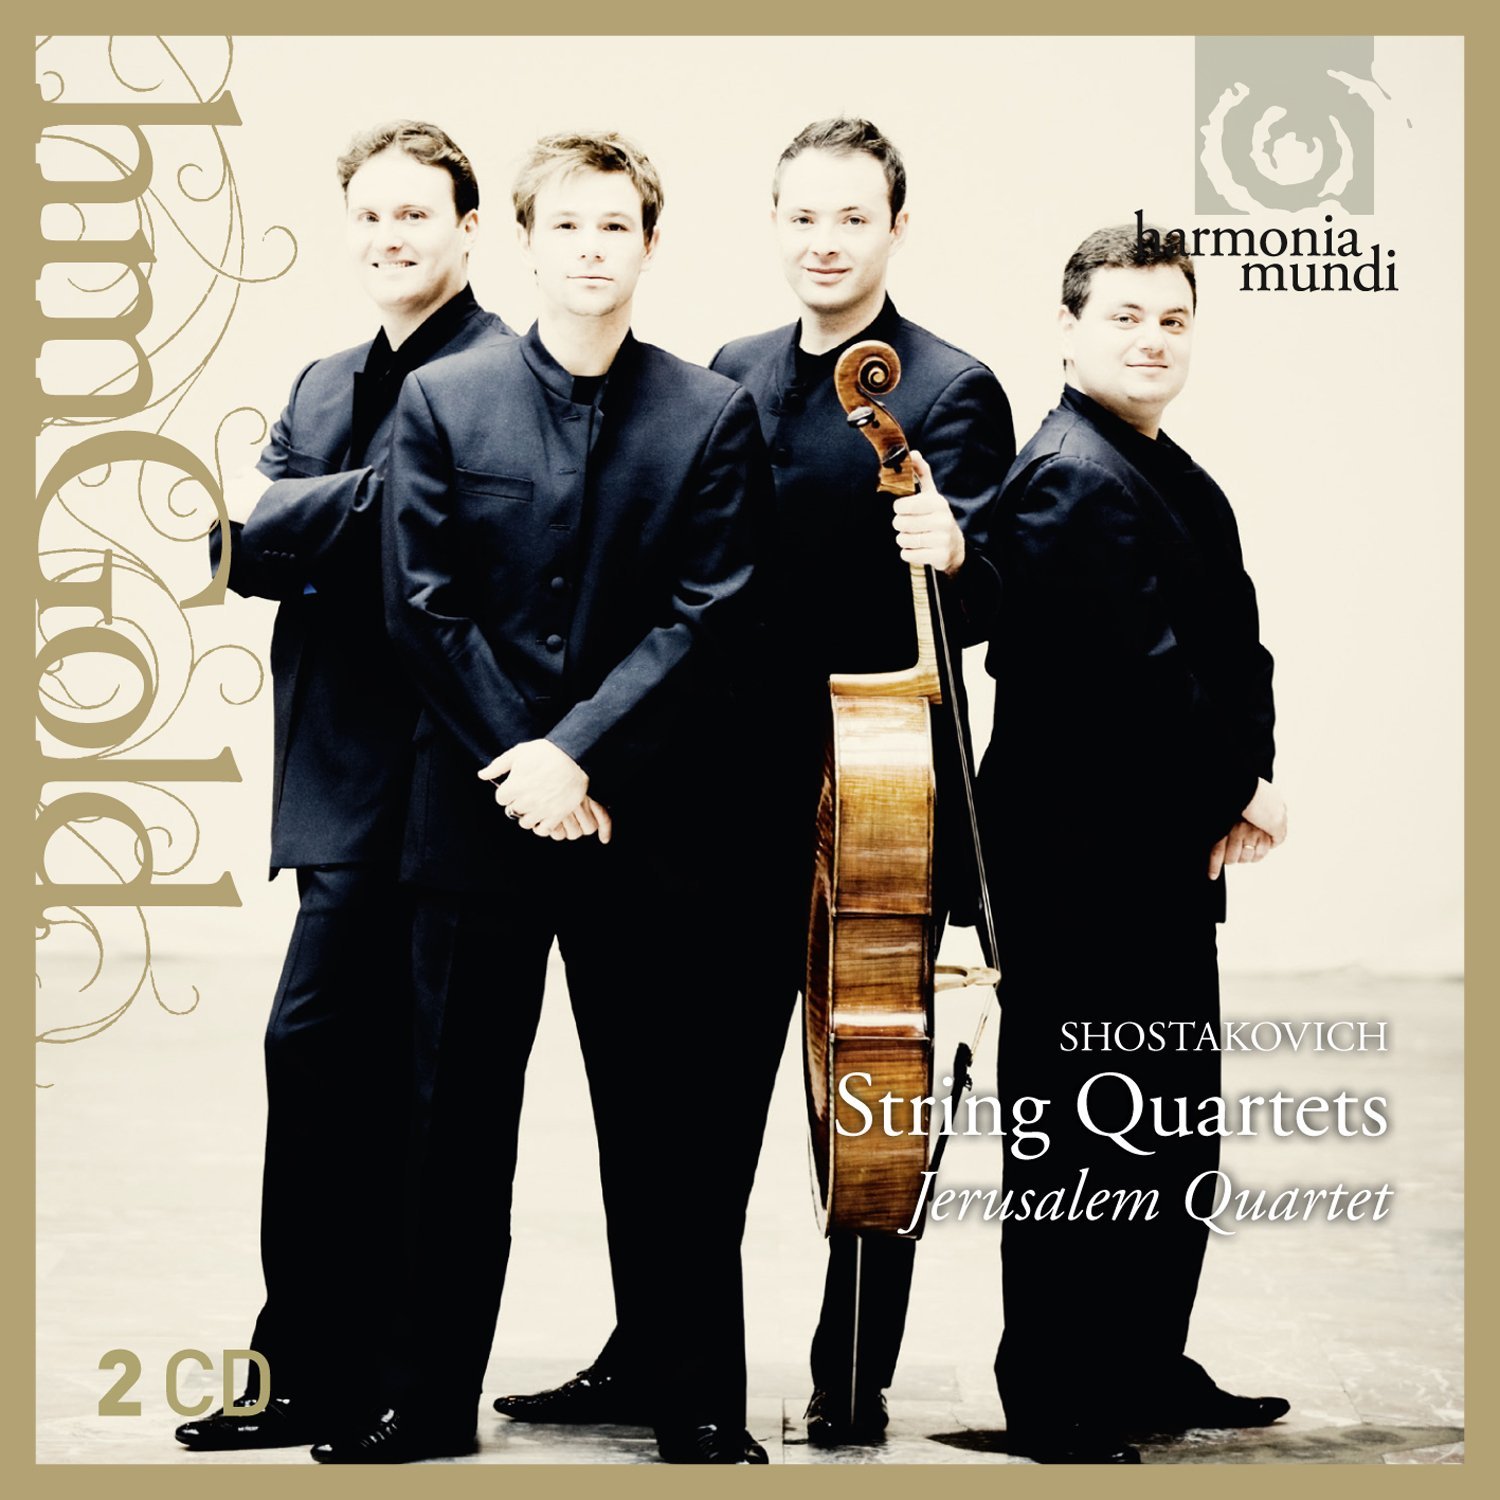 The Requiem of String Quartet, Jerusalem Quartet's Shostakovich